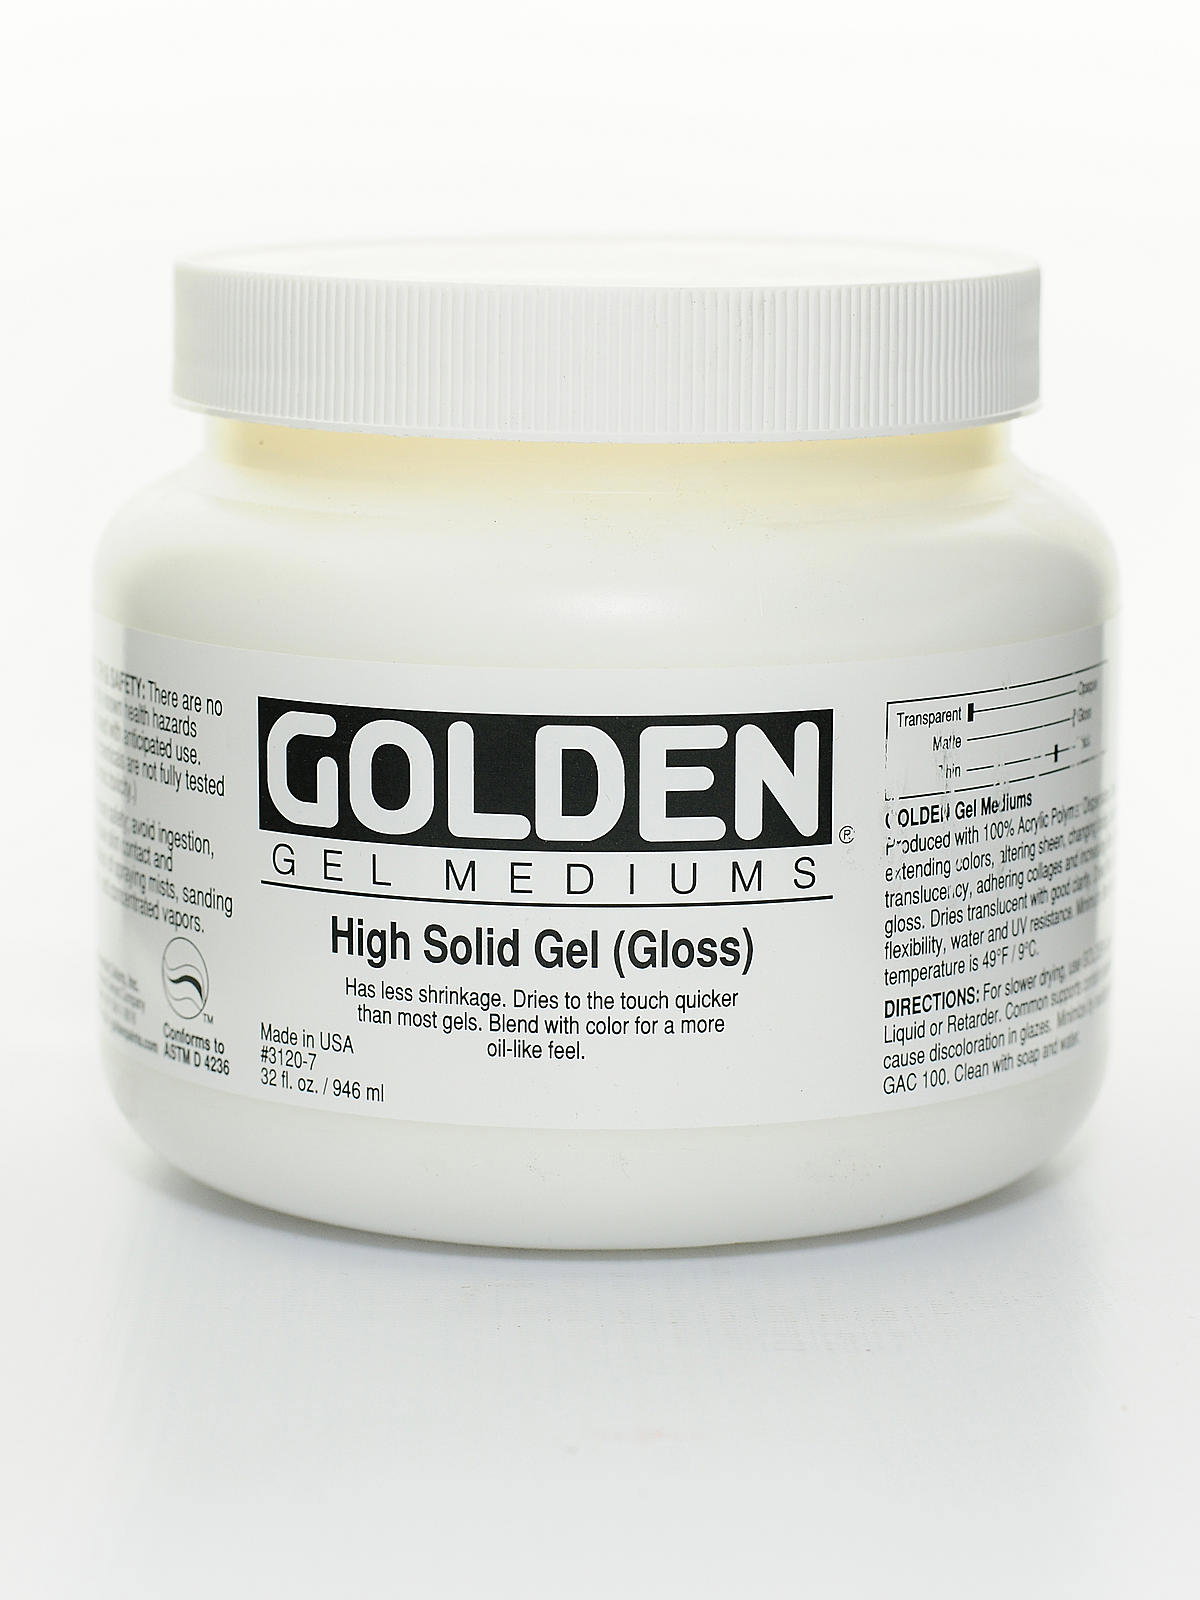 Golden - Regular Gel - Semi-Gloss - 8 oz.